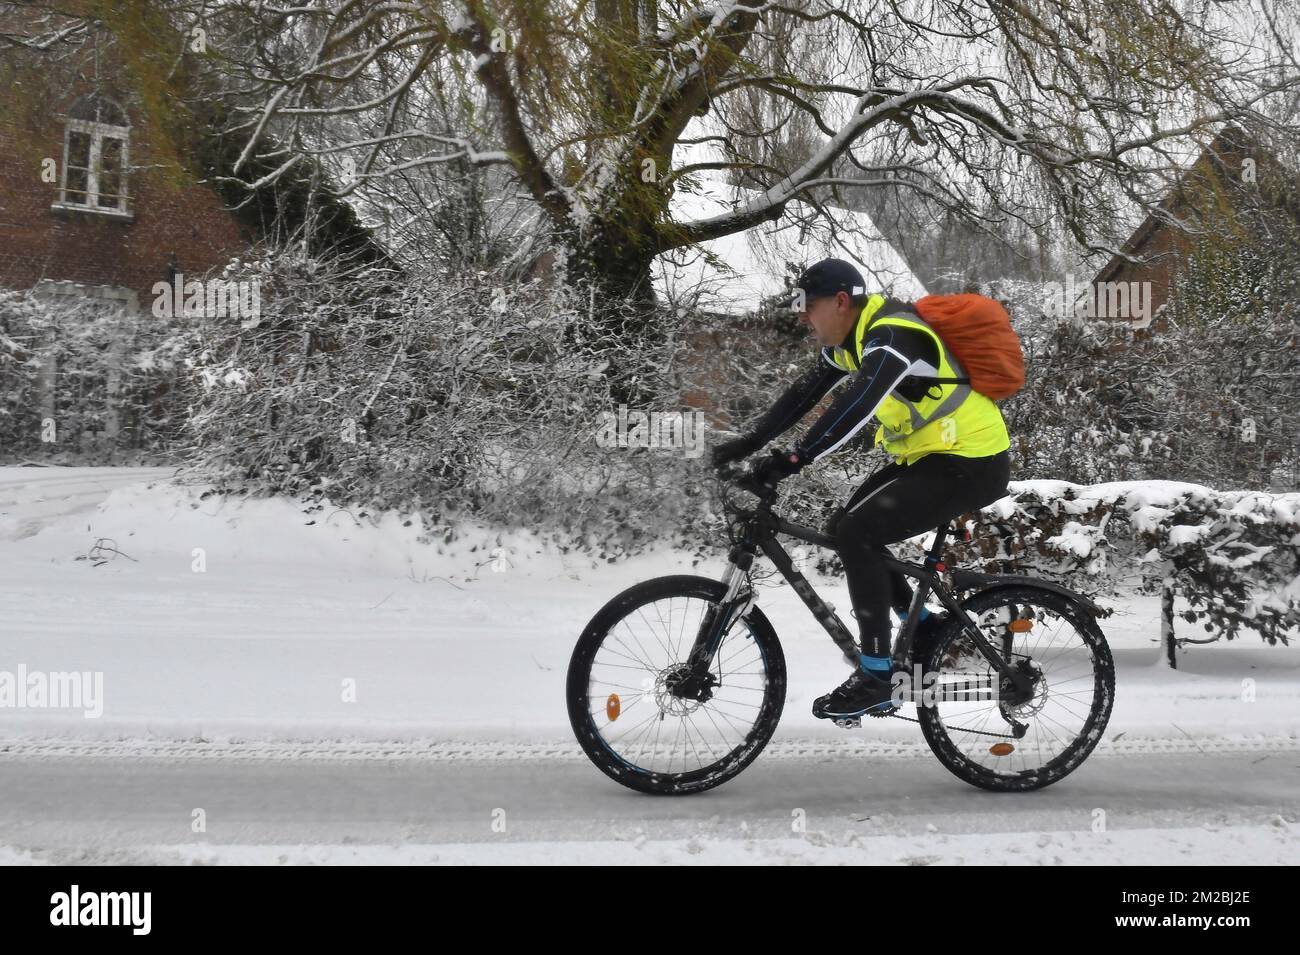 L'illustration montre un cycliste avec gilet jaune fluorescent à cheval sur  un VTT à travers la neige alors que les températures froides balayent la  Belgique, lundi 11 décembre 2017. BELGA PHOTO DIRK